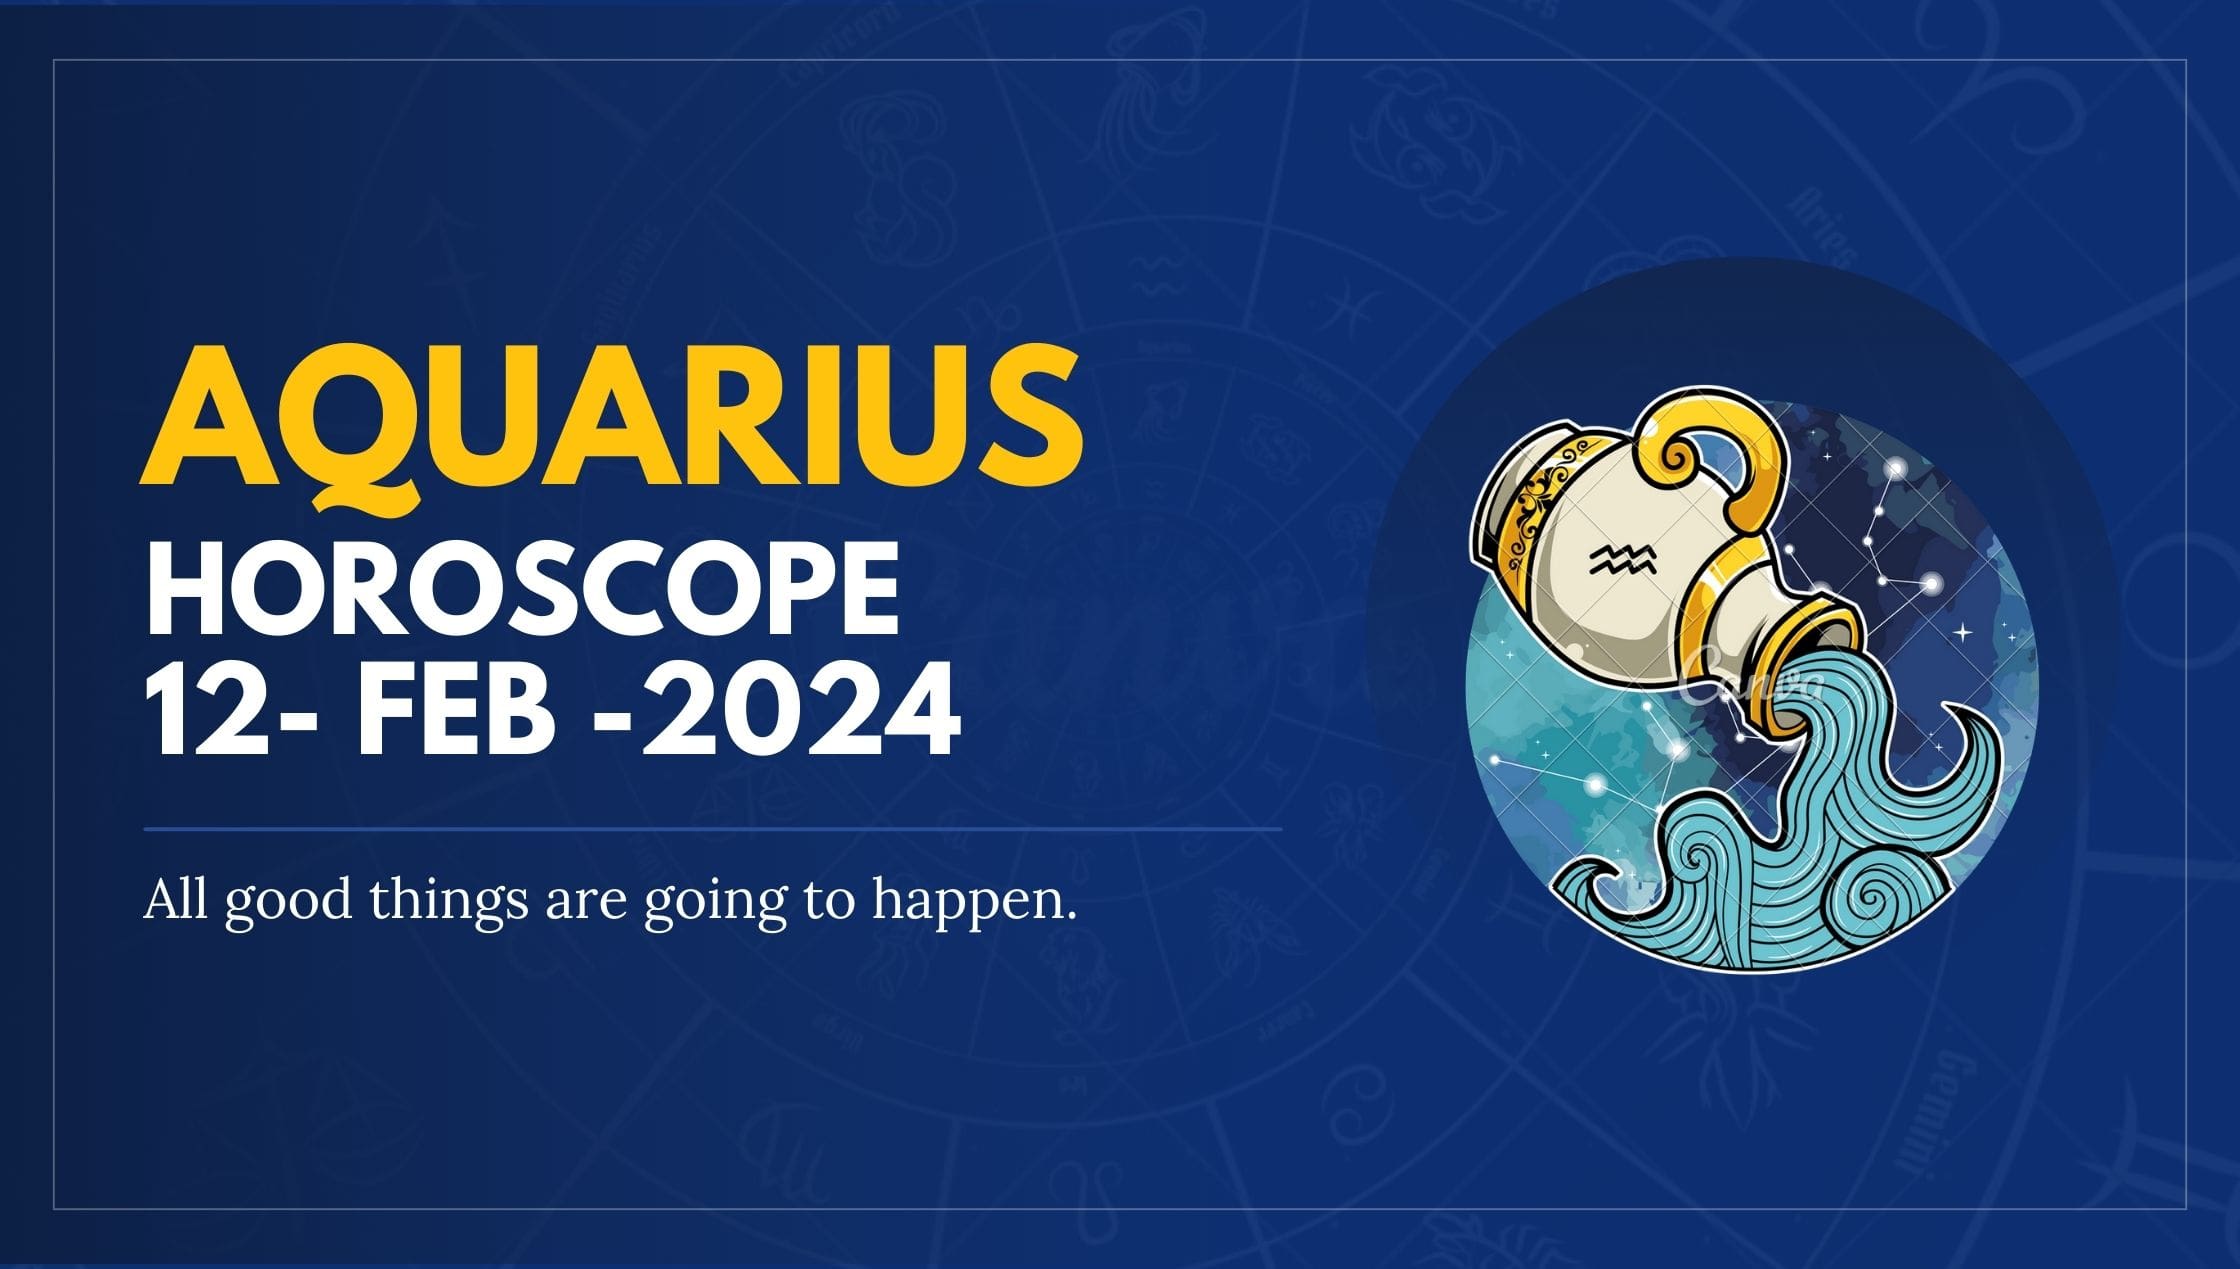 Aquarius Horoscope 12- FEB -2024-min